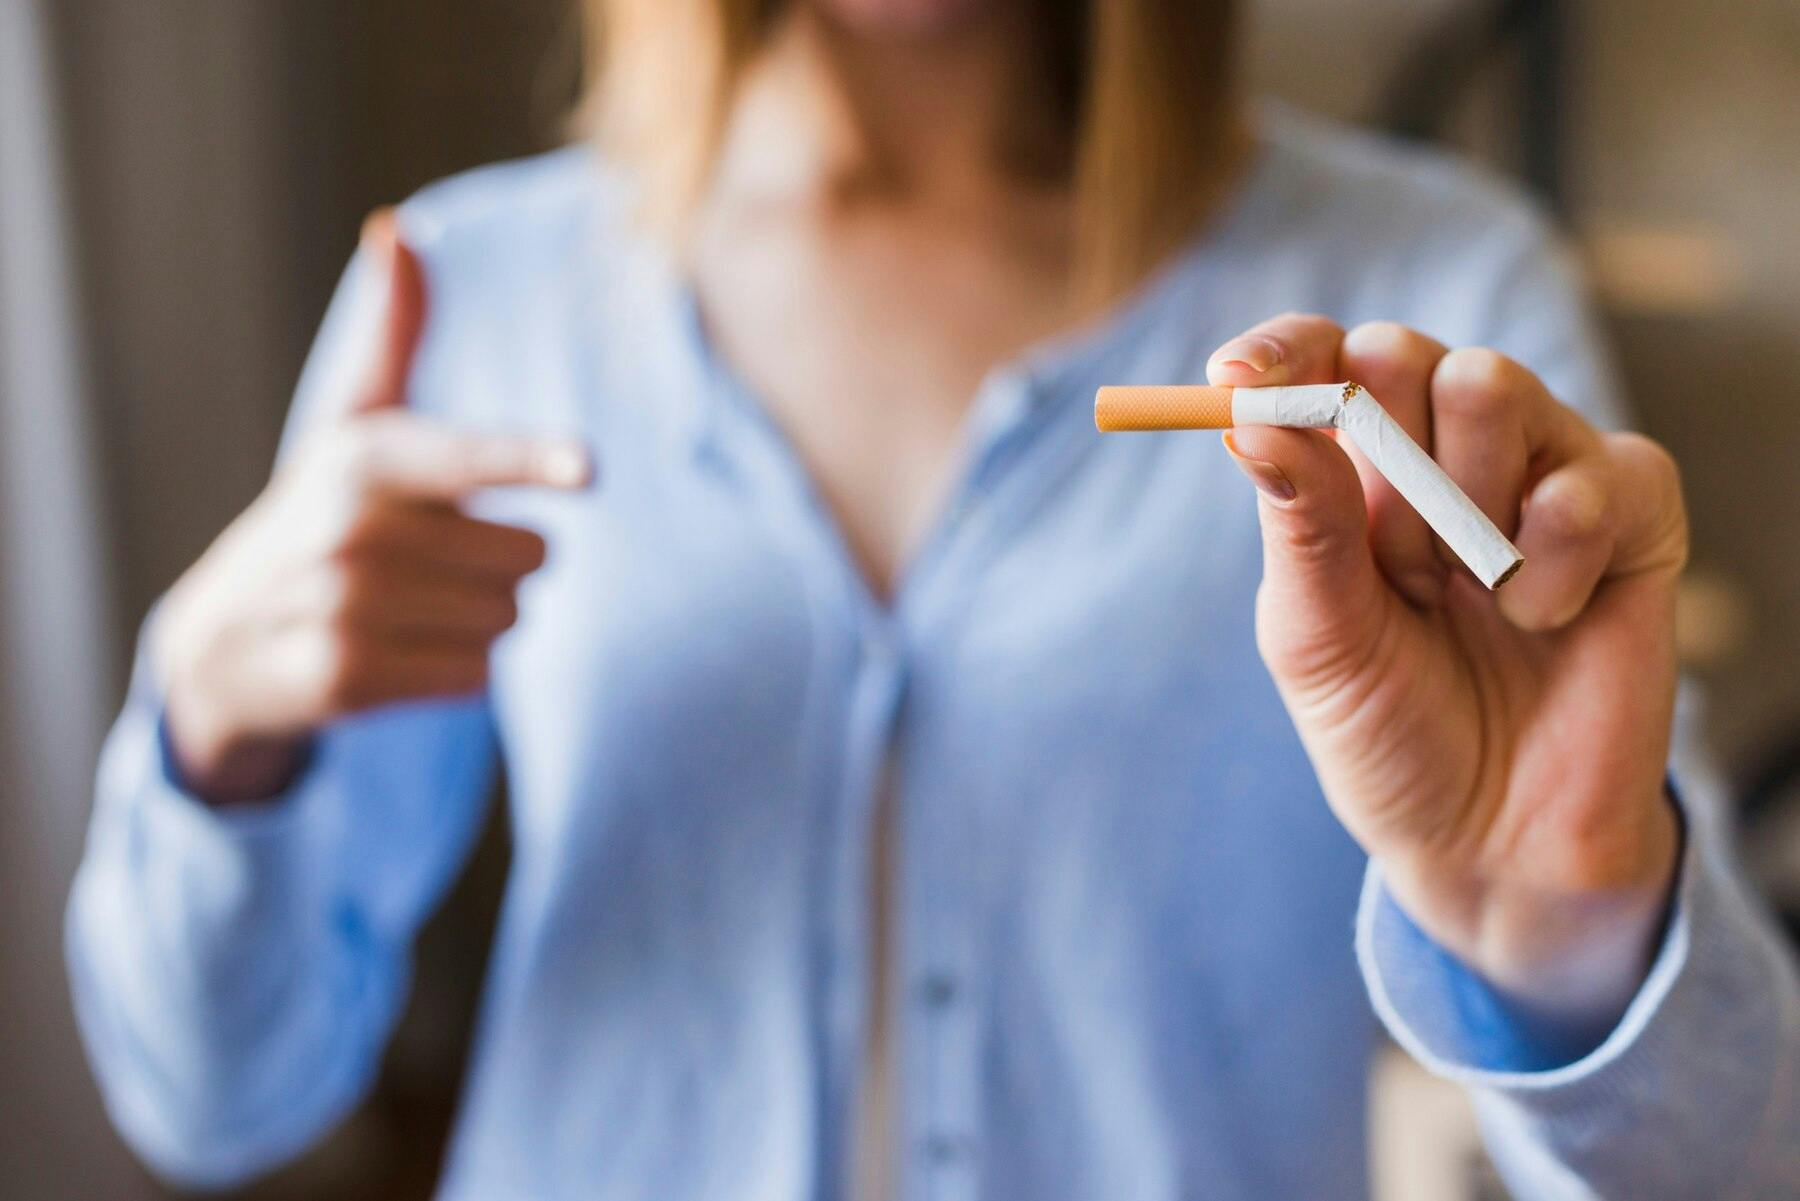 Primer plano de la mano de una mujer sosteniendo un cigarrillo partido a la mitad, haciendo alución a dejar el mal hábito de fumar.